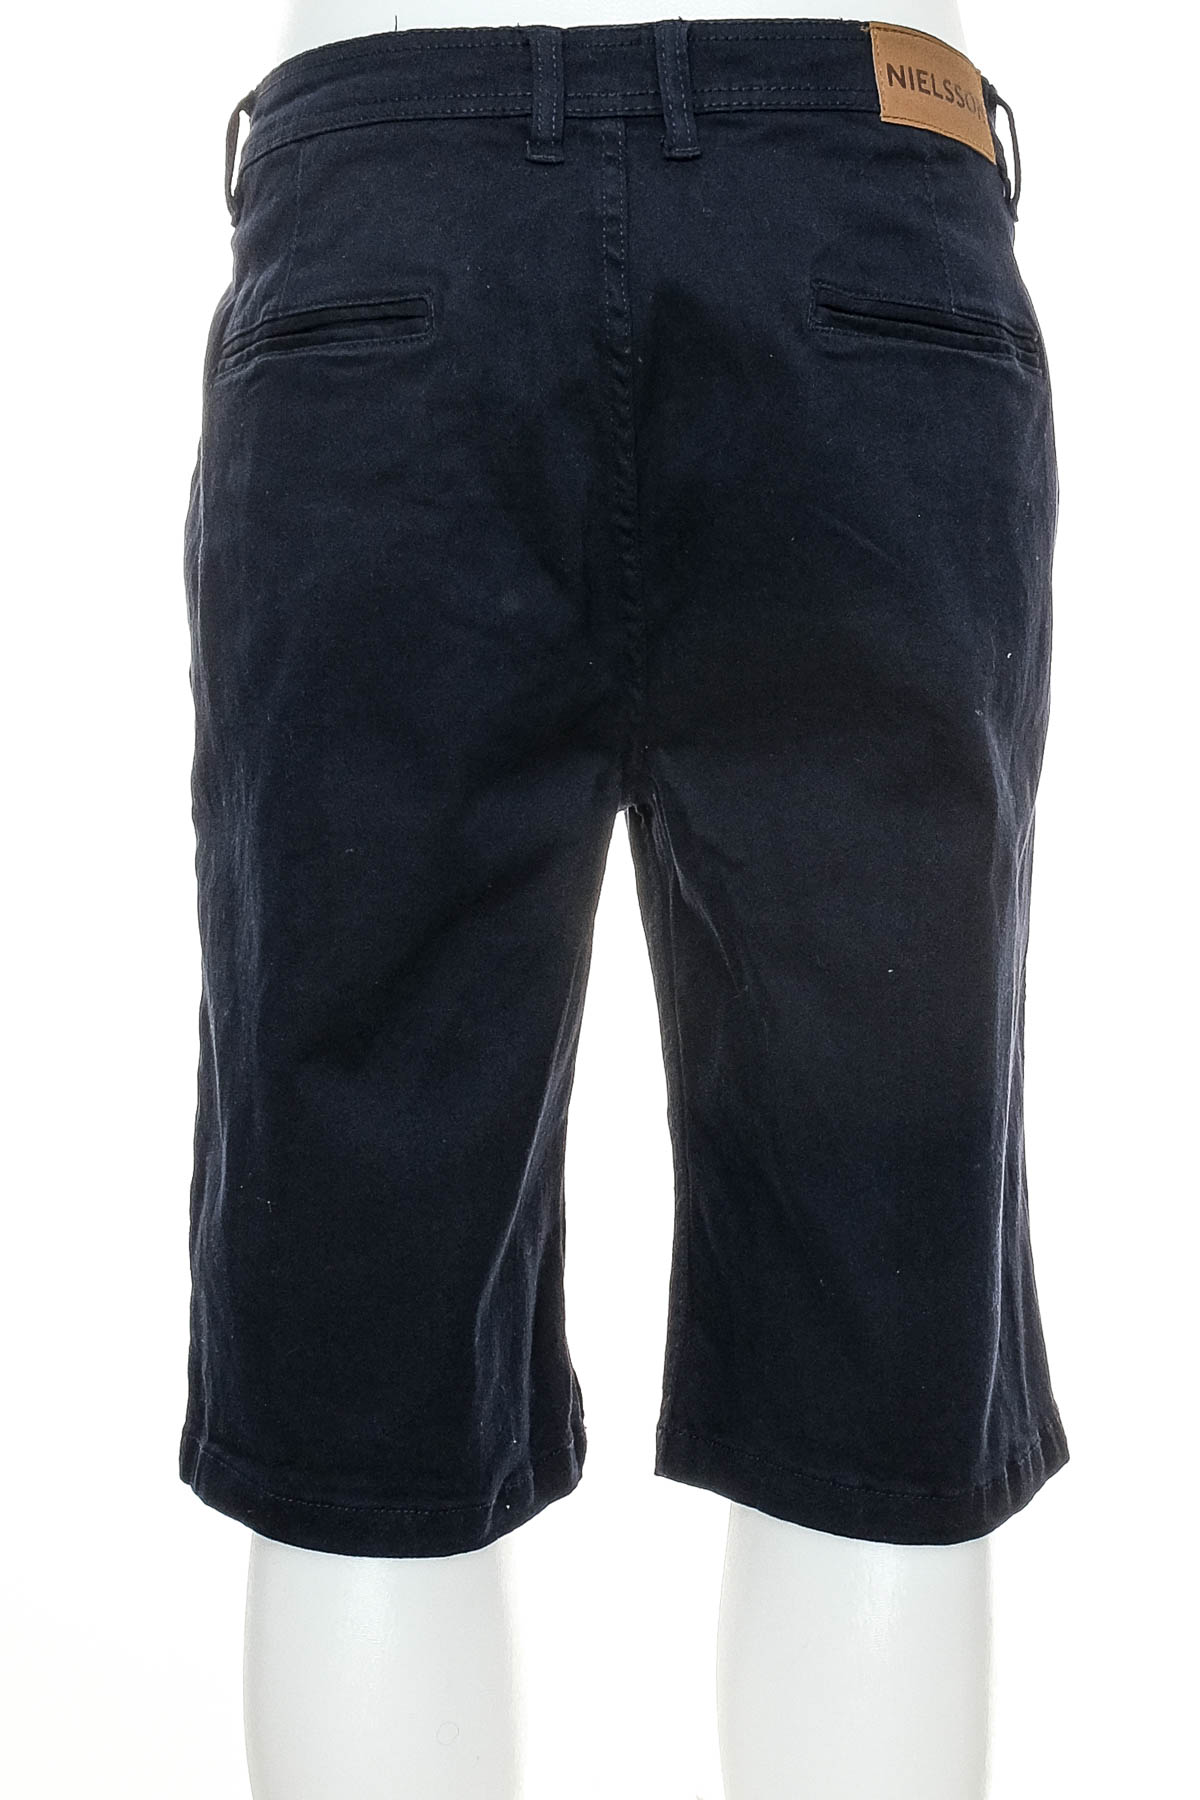 Мъжки къси панталони - Nielsson - 1